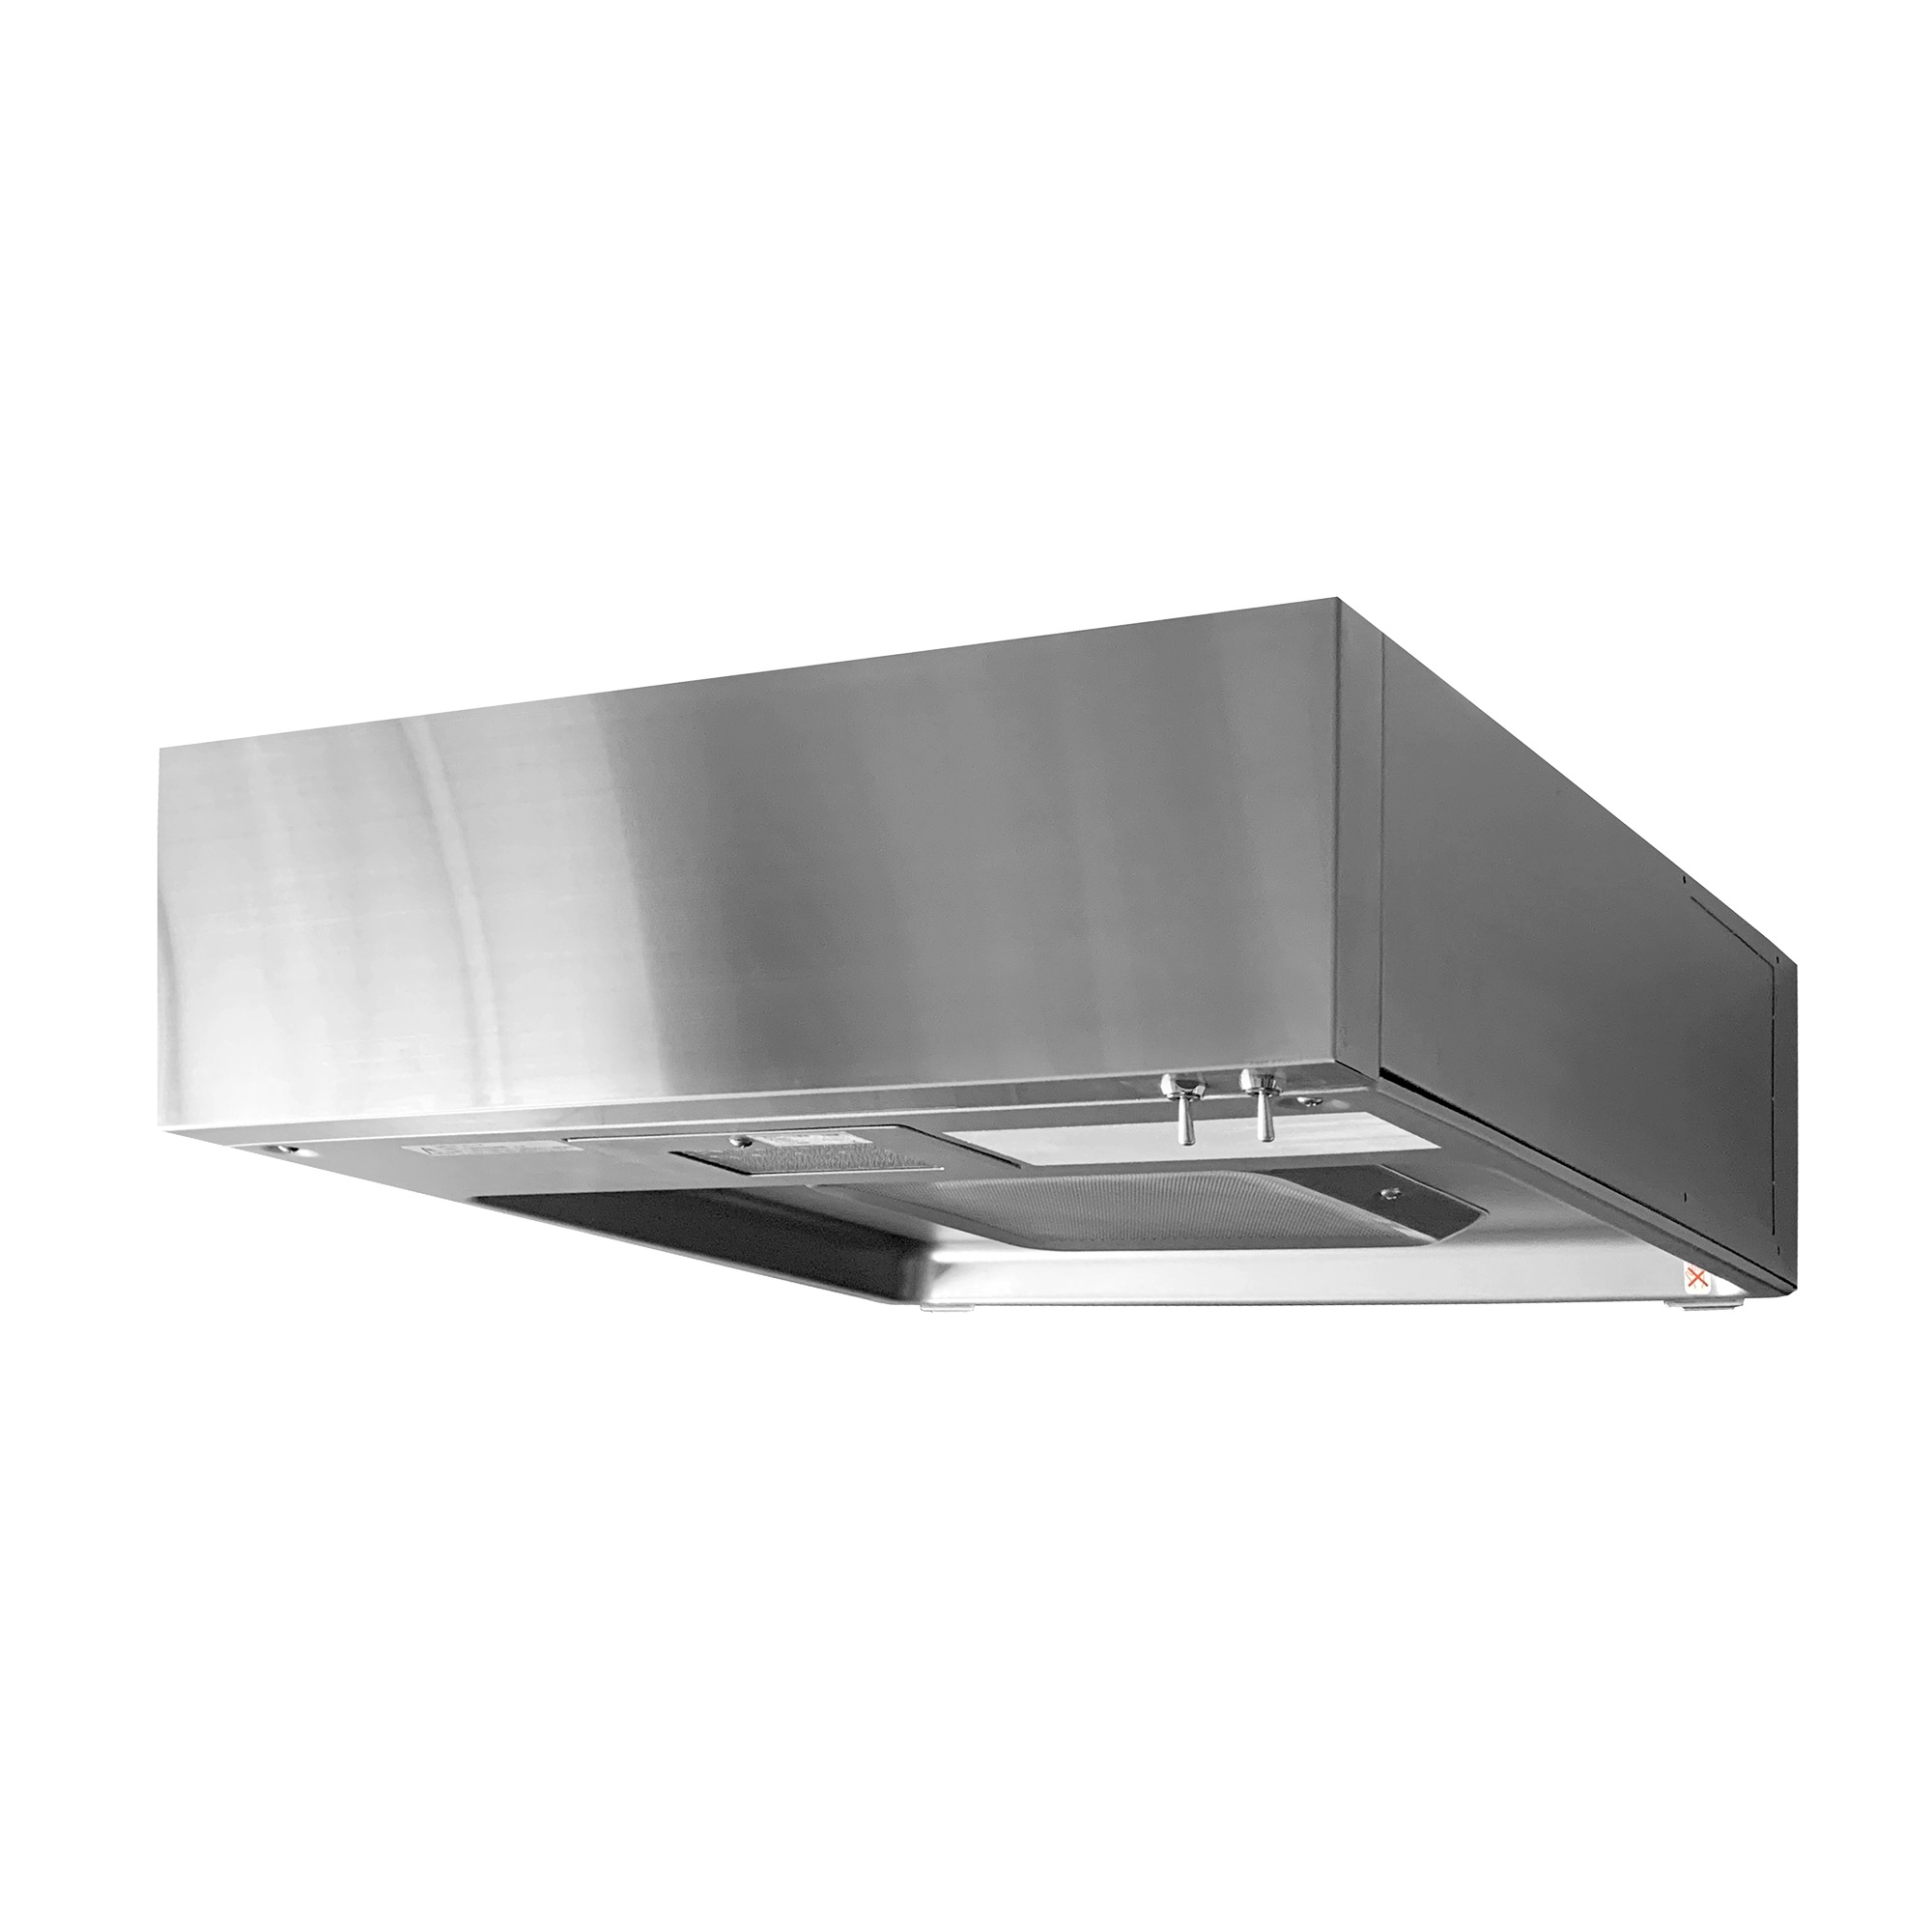 フラットレンジフード 壁付け型 W600 ステンレス ヘアライン KB-KC017-09-G141 レンジフード キッチン  toolbox